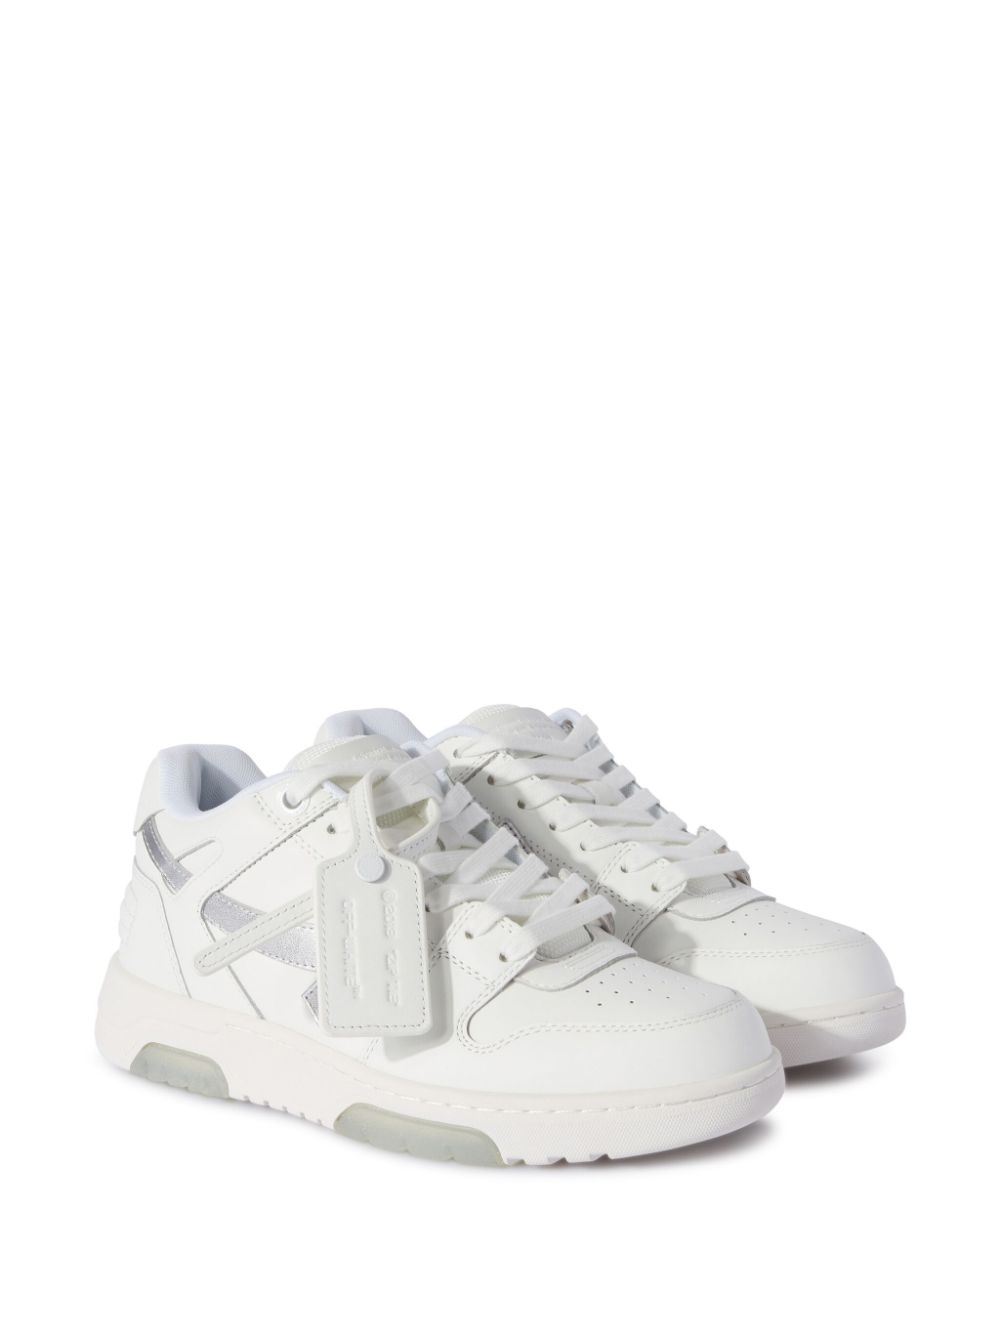 OFF WHITE FASHION Sneakers White